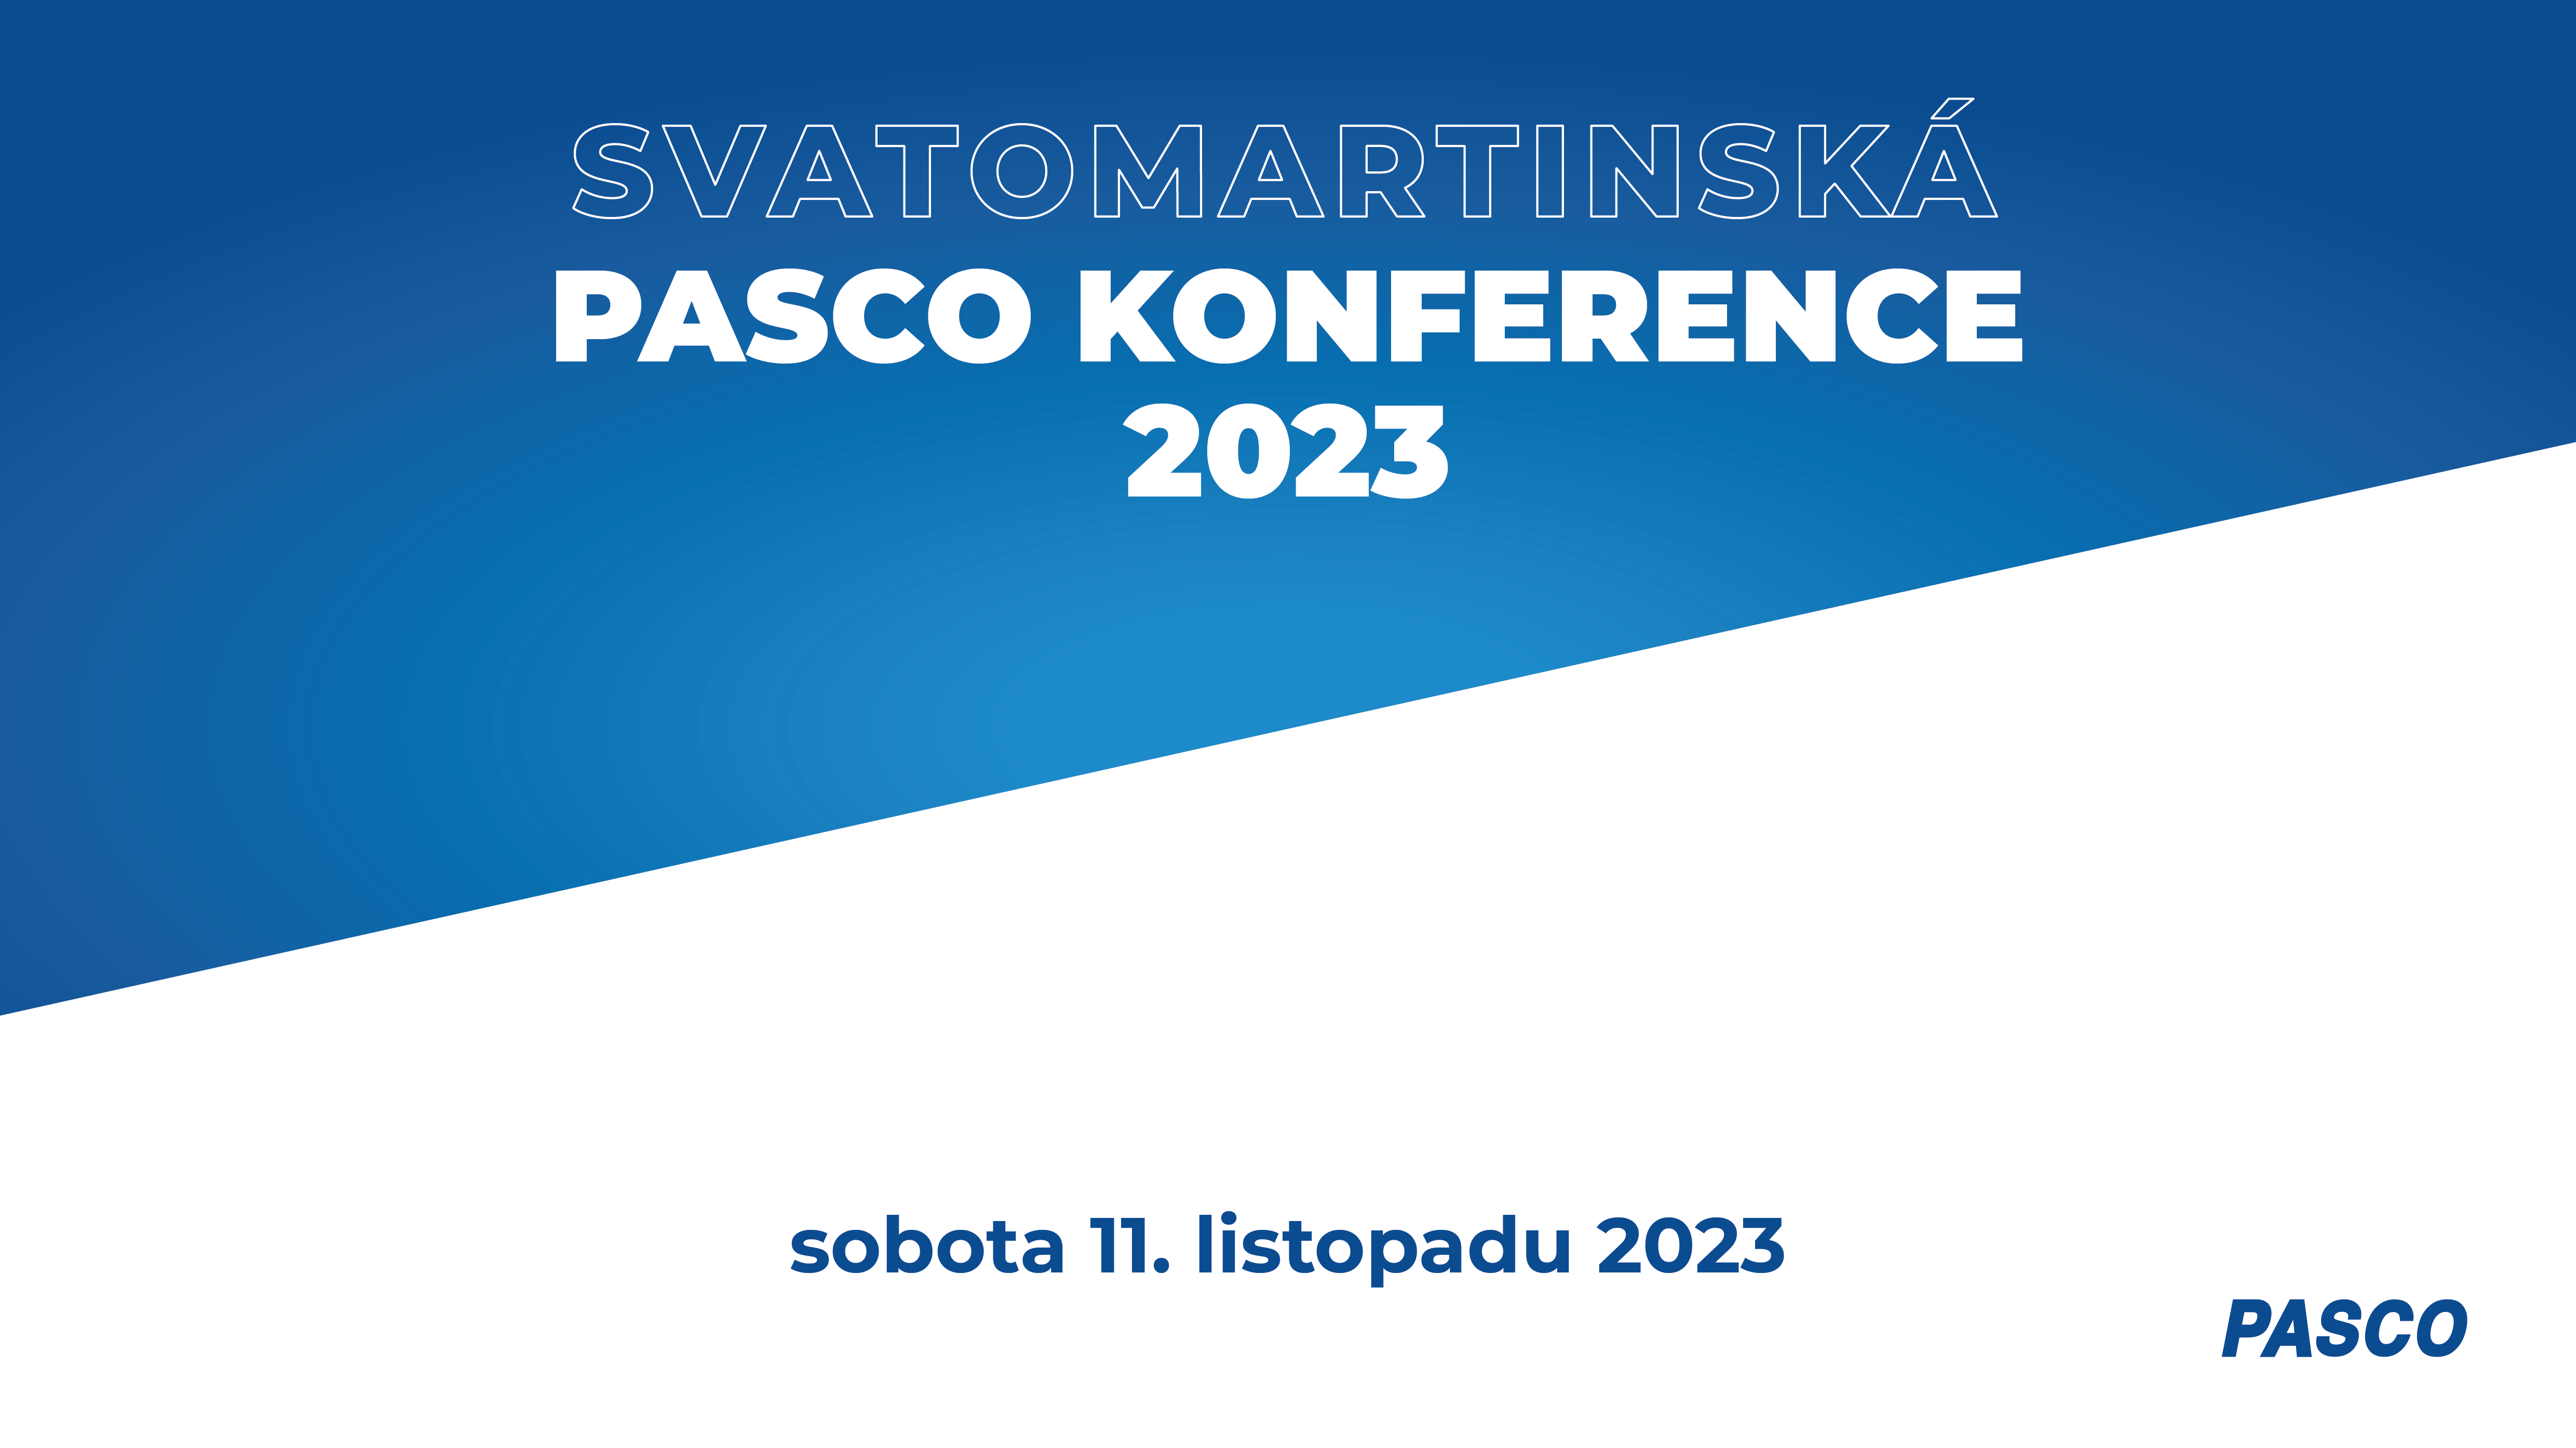 Svatomartinská PASCO konference 2023